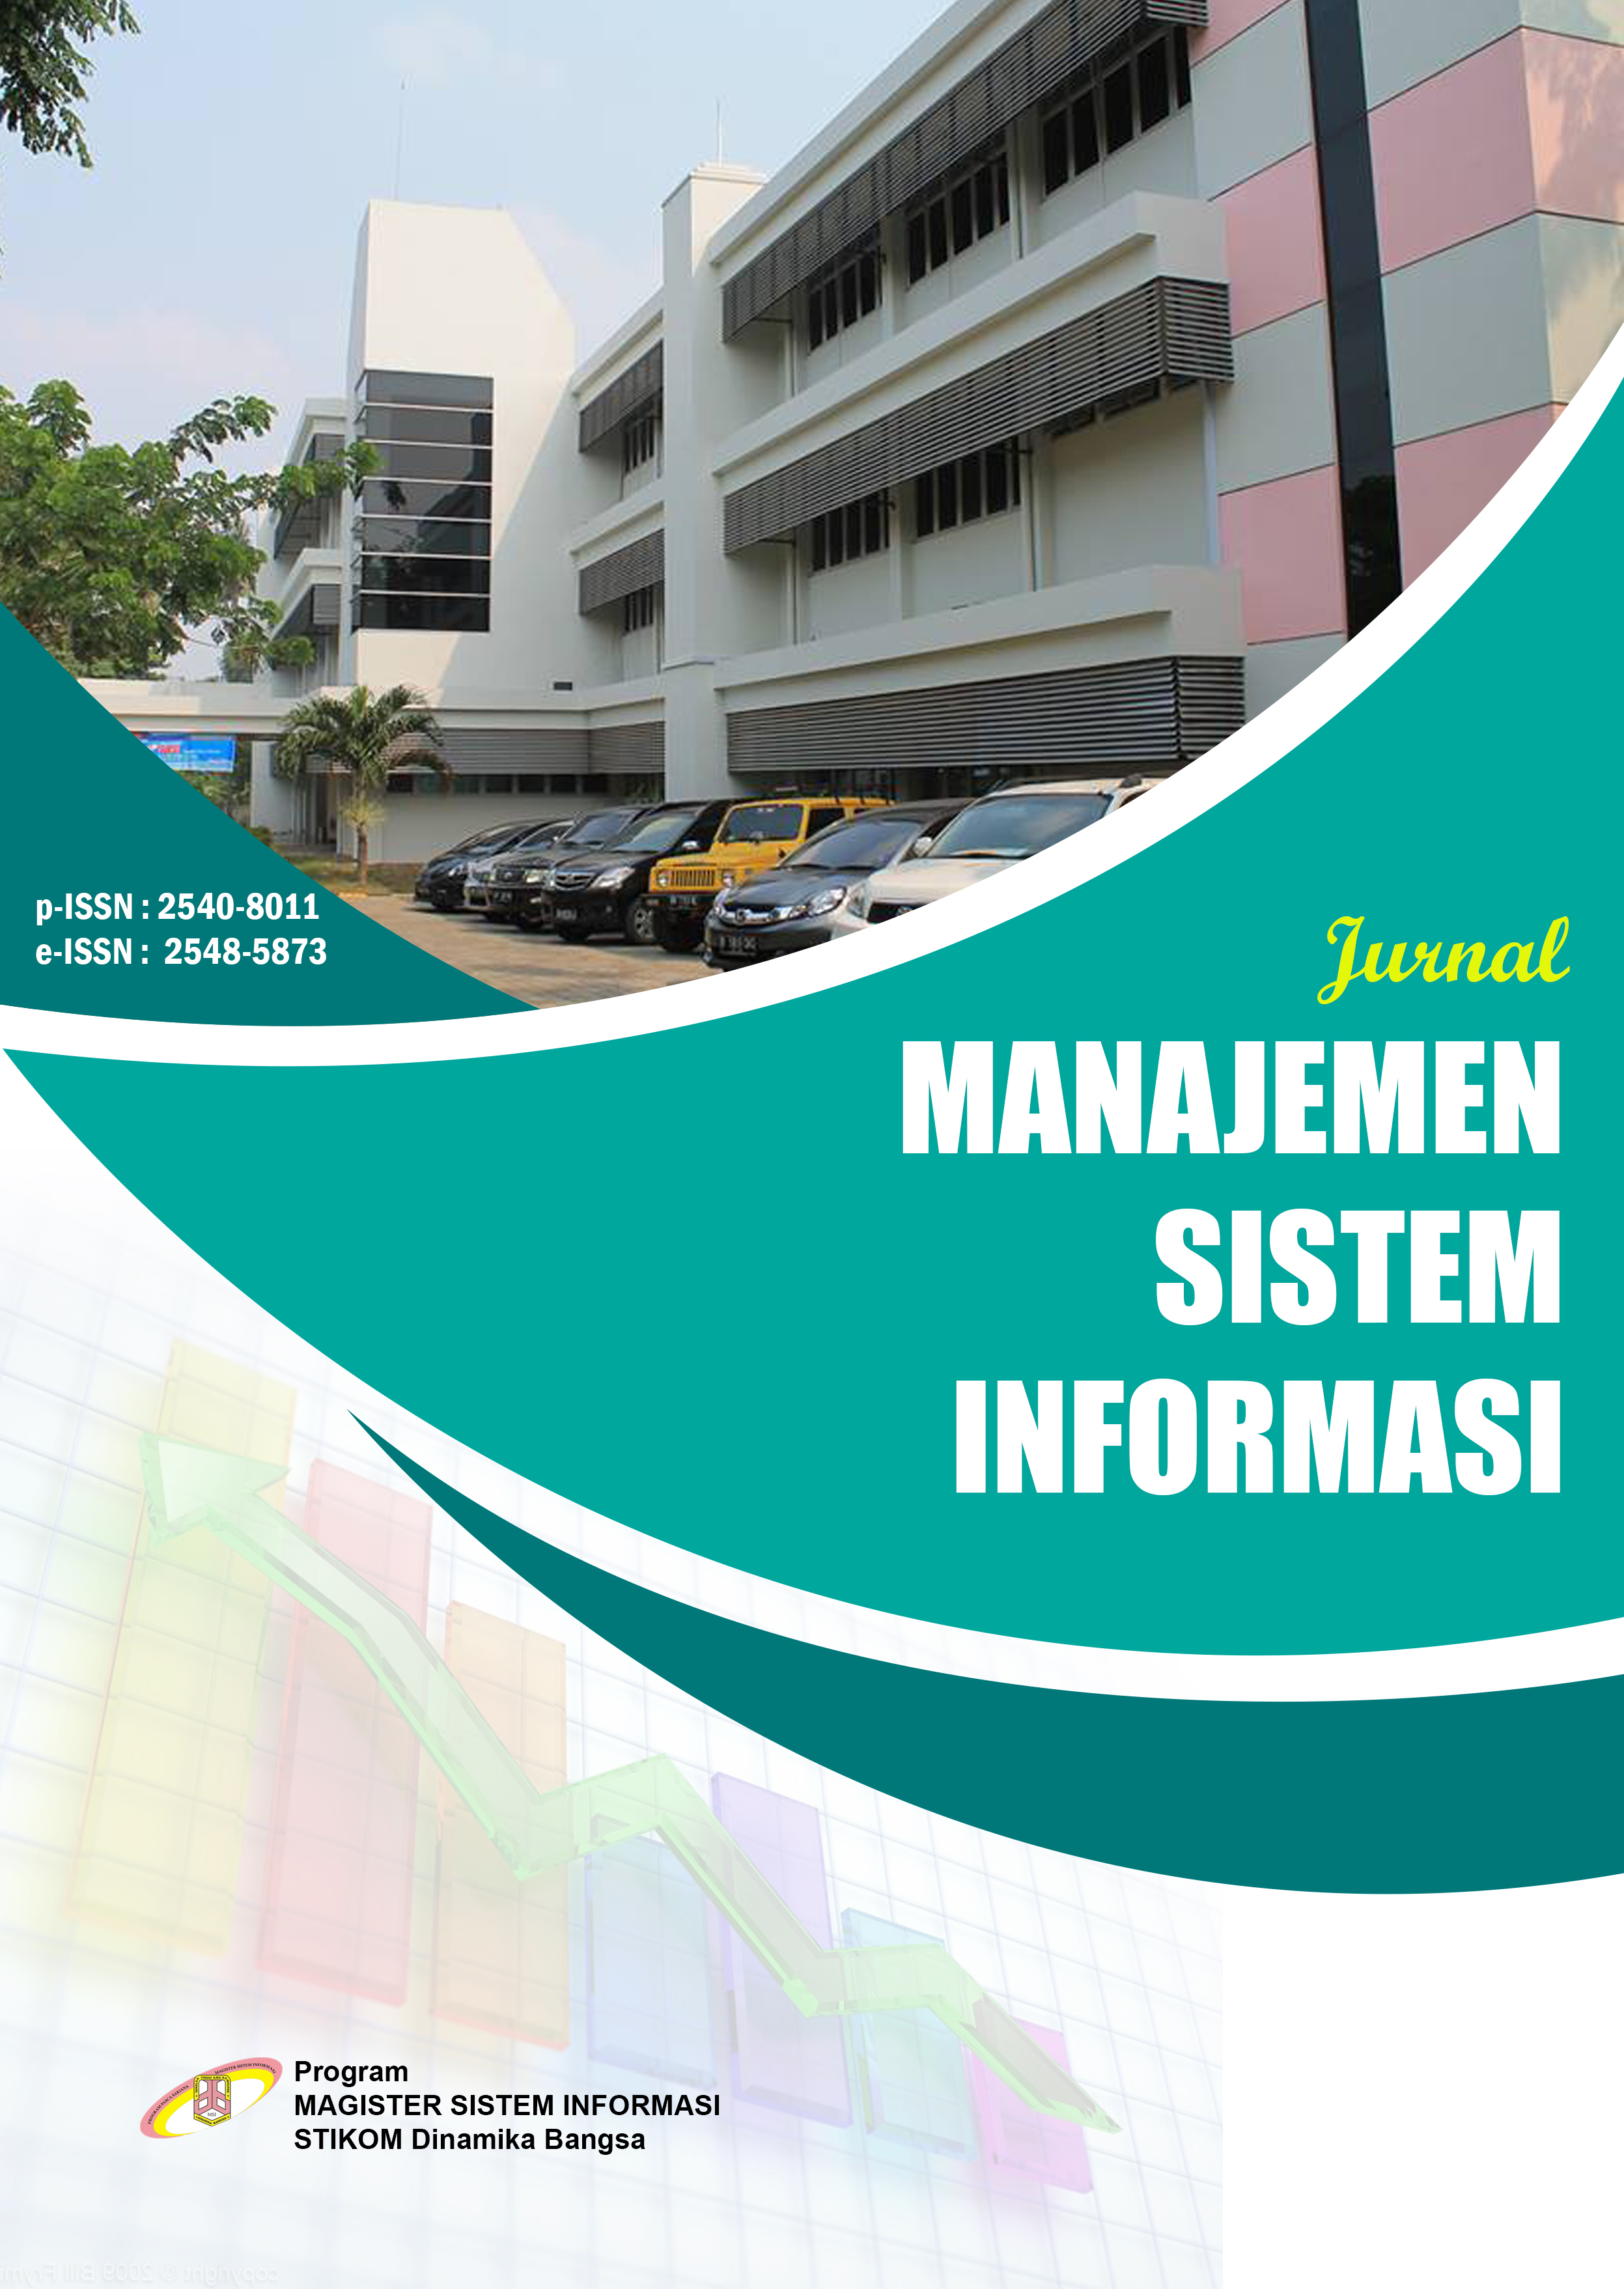 					Lihat Vol 4 No 4 (2019): Jurnal Manajemen Sistem Informasi
				